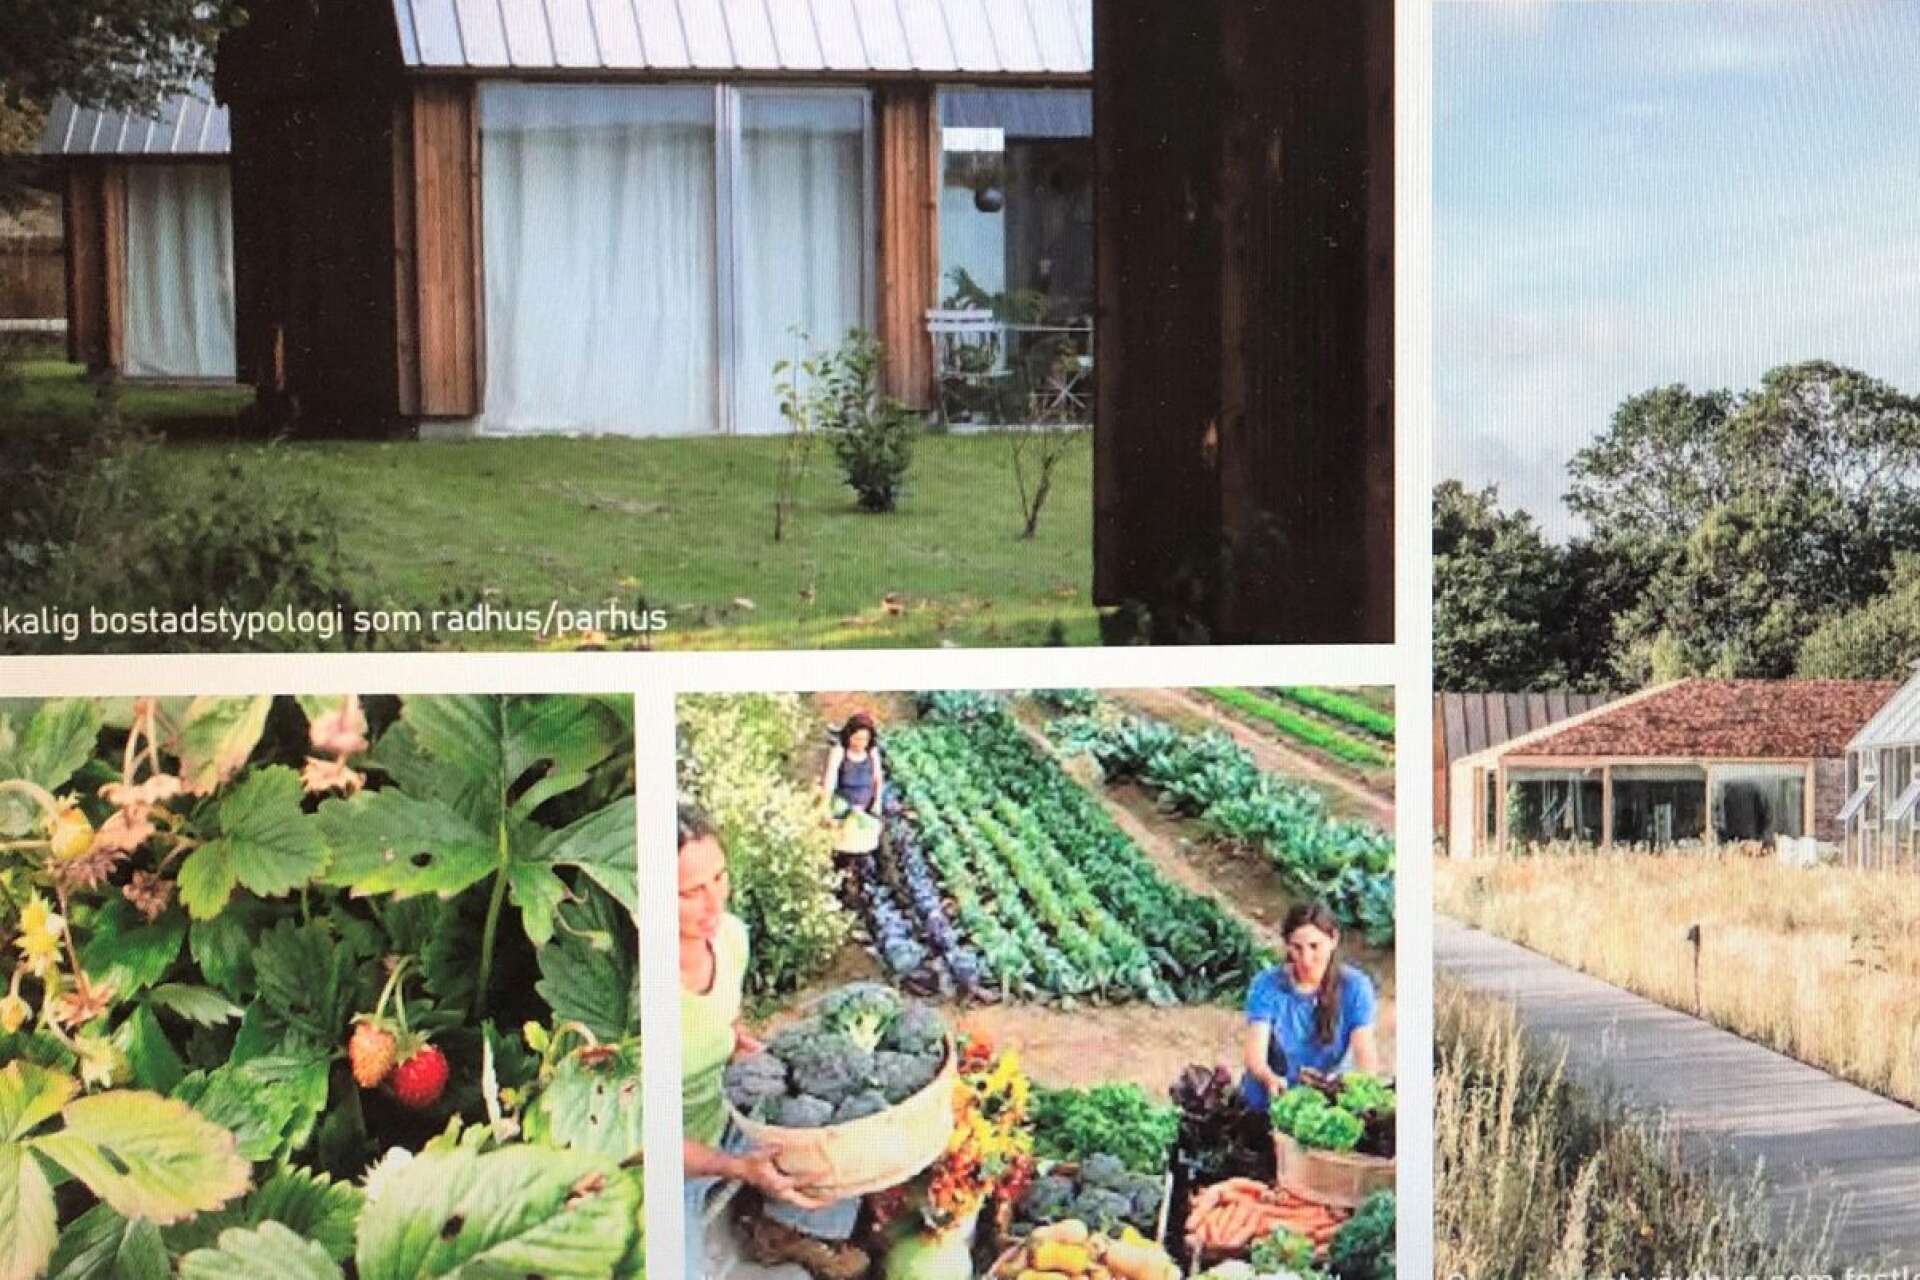 Växthus och odlingar planeras det för mellan bostadsområdena.